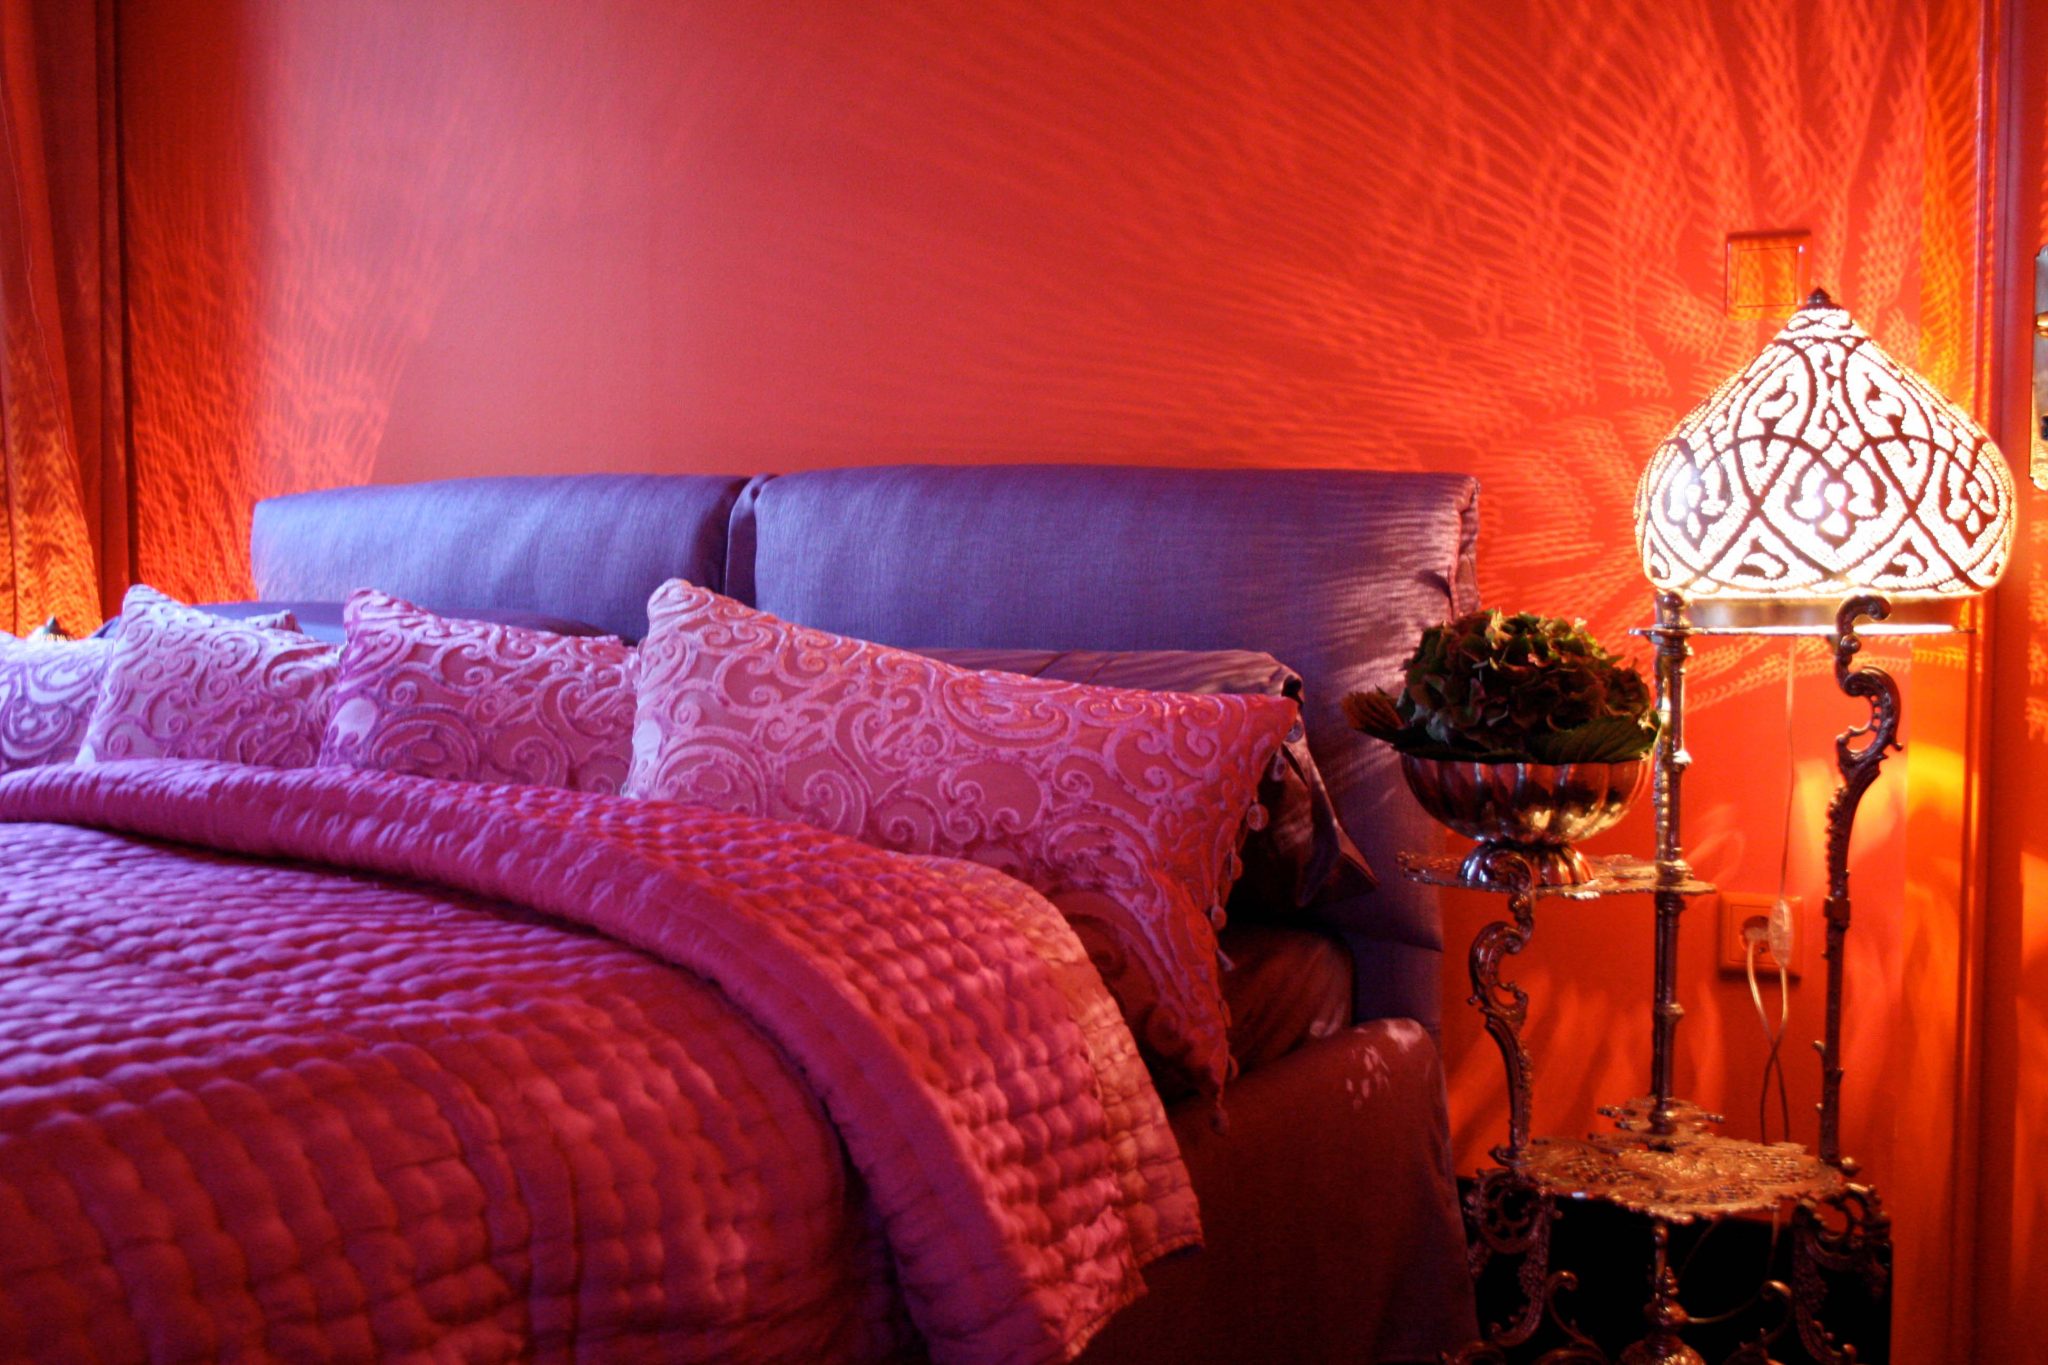 Orange gestrichenes Zimmer, violett gepolstertes Doppelbett mit magentafarbener Decke und Kissen, daneben orientalischer Nachttisch mit Lampe in Zwiebelform.